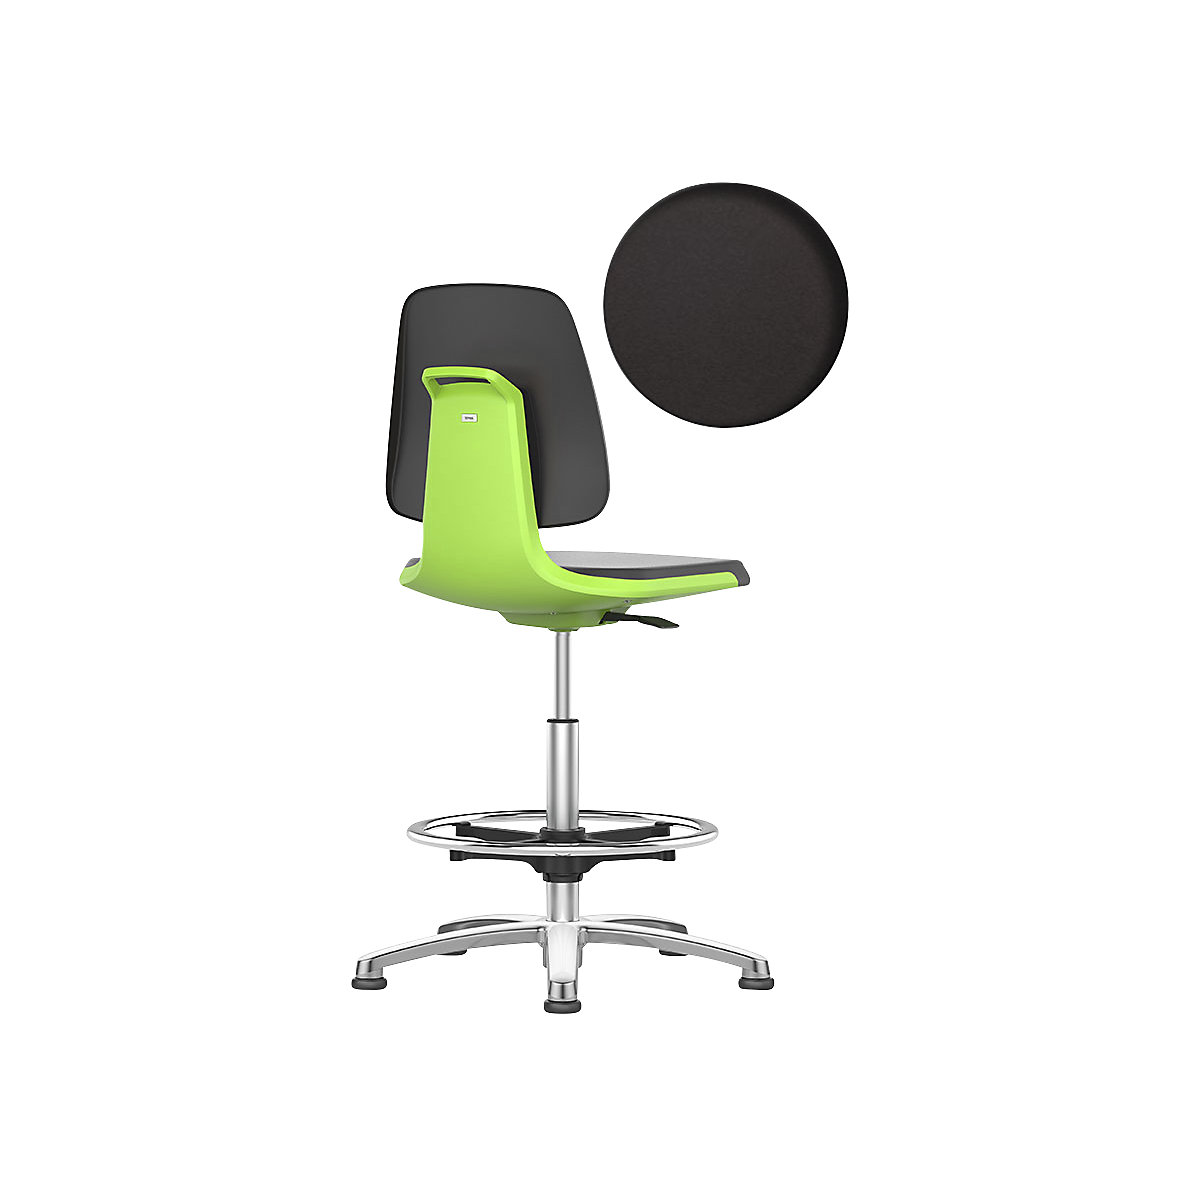 Radna okretna stolica LABSIT – bimos, s podnim vodilicama i nožnim obručem, sjedalo s presvlakom od umjetne kože, u zelenoj boji-15